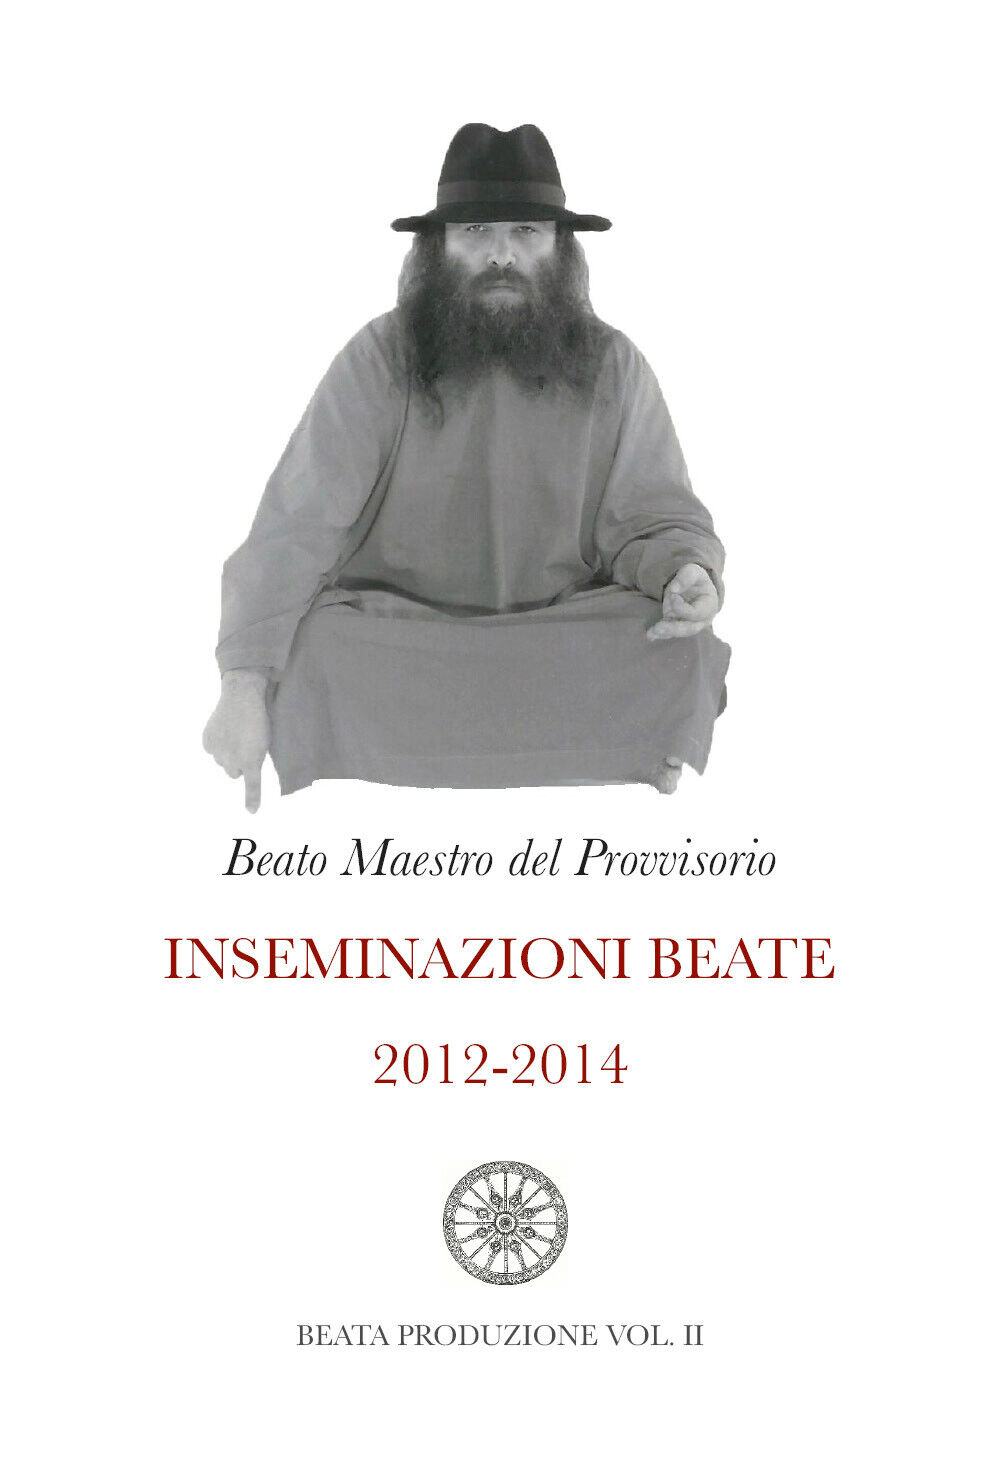 Inseminazioni beate 2012-2014 di Beato Maestro Del Provvisorio,  2020,  Youcanpr